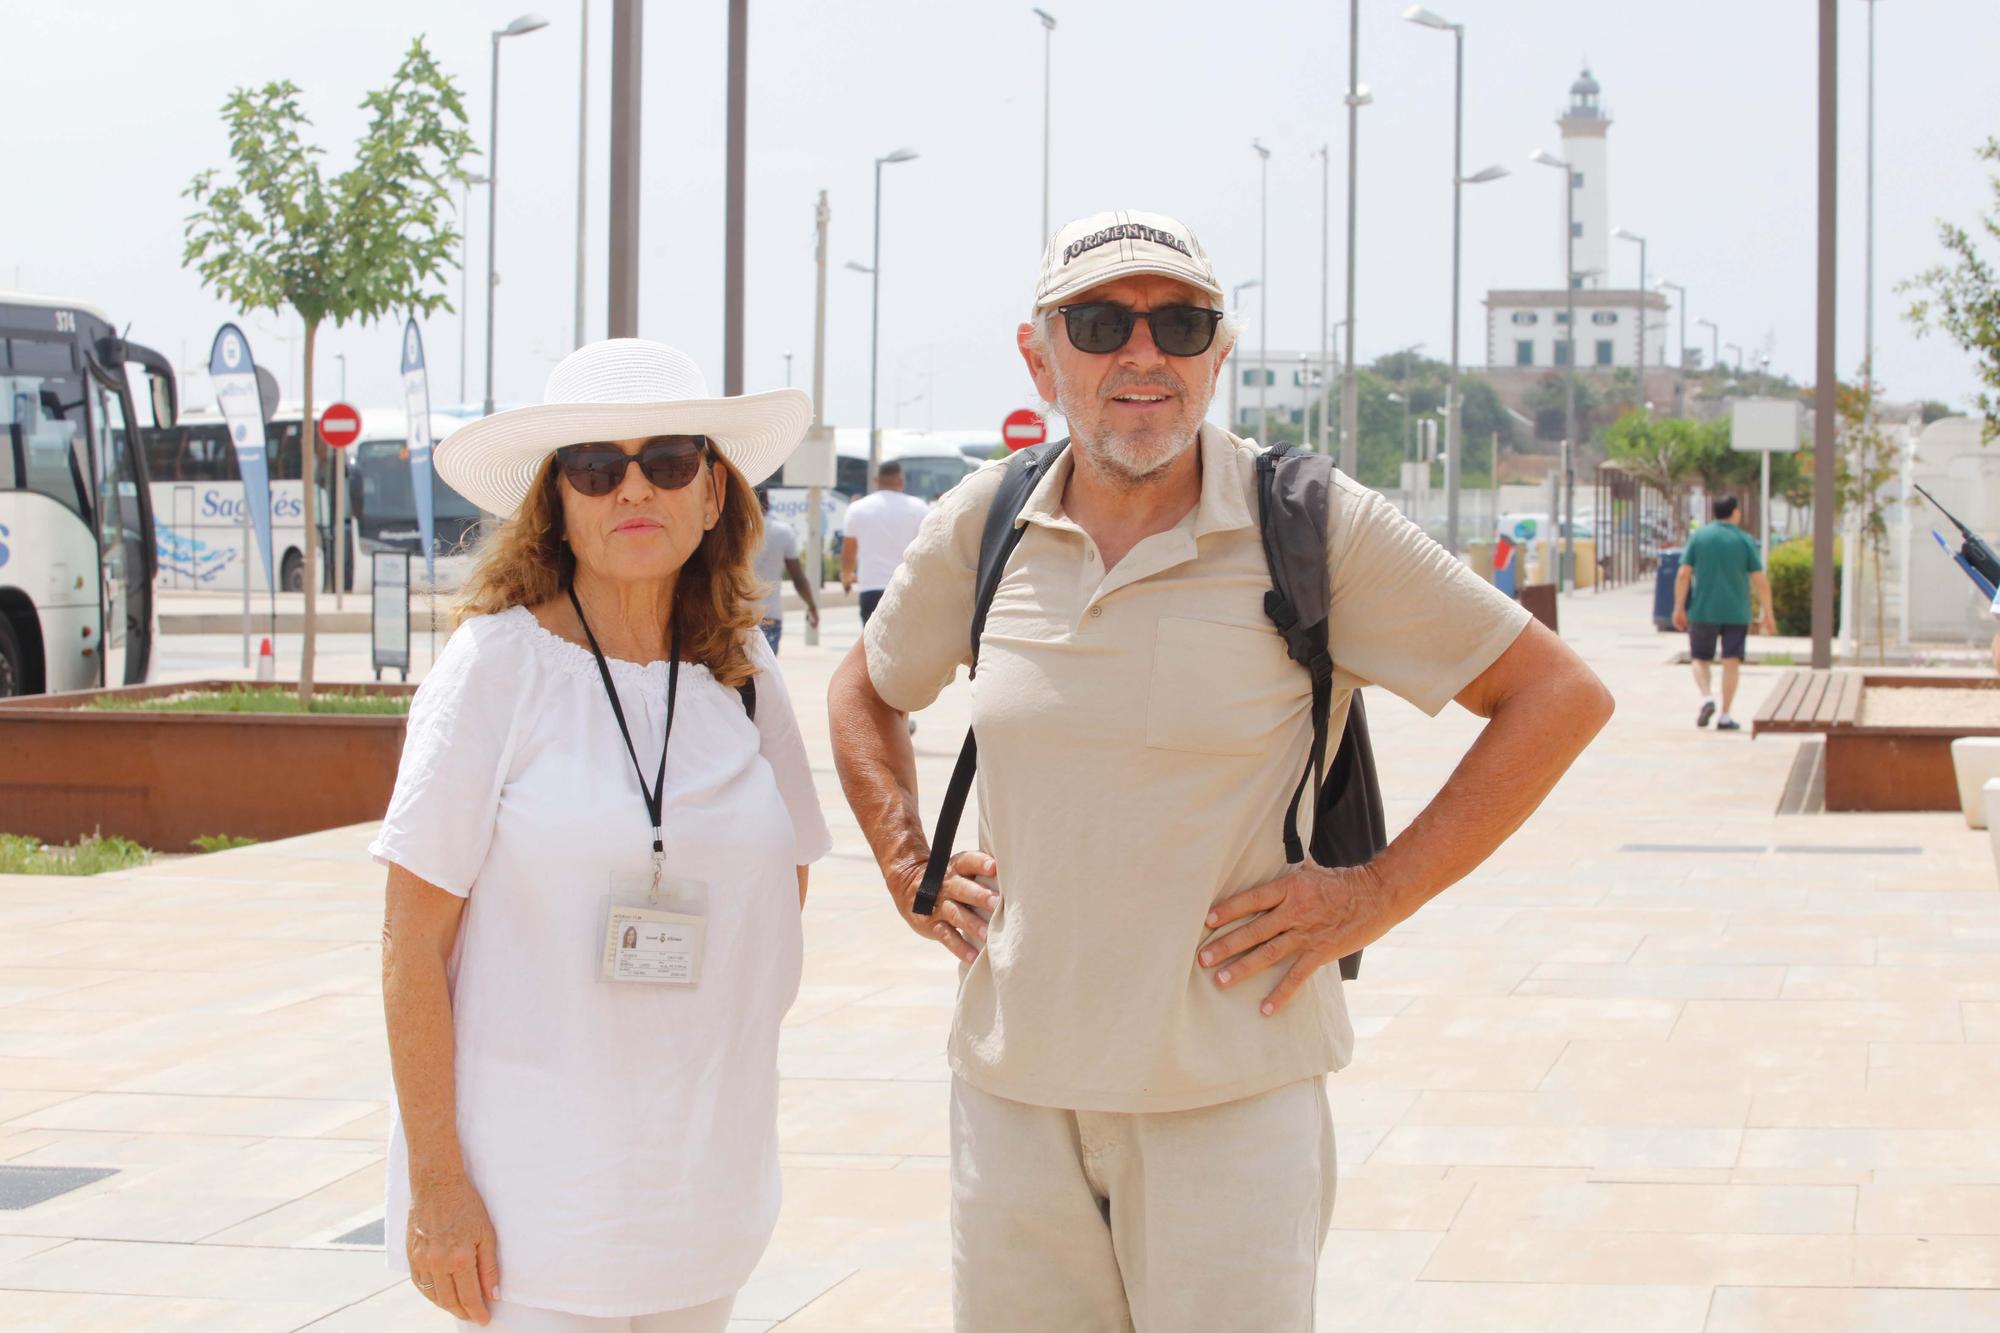 Galería de imágenes de la llegada de turistas a la nueva estación marítima de Botafoch